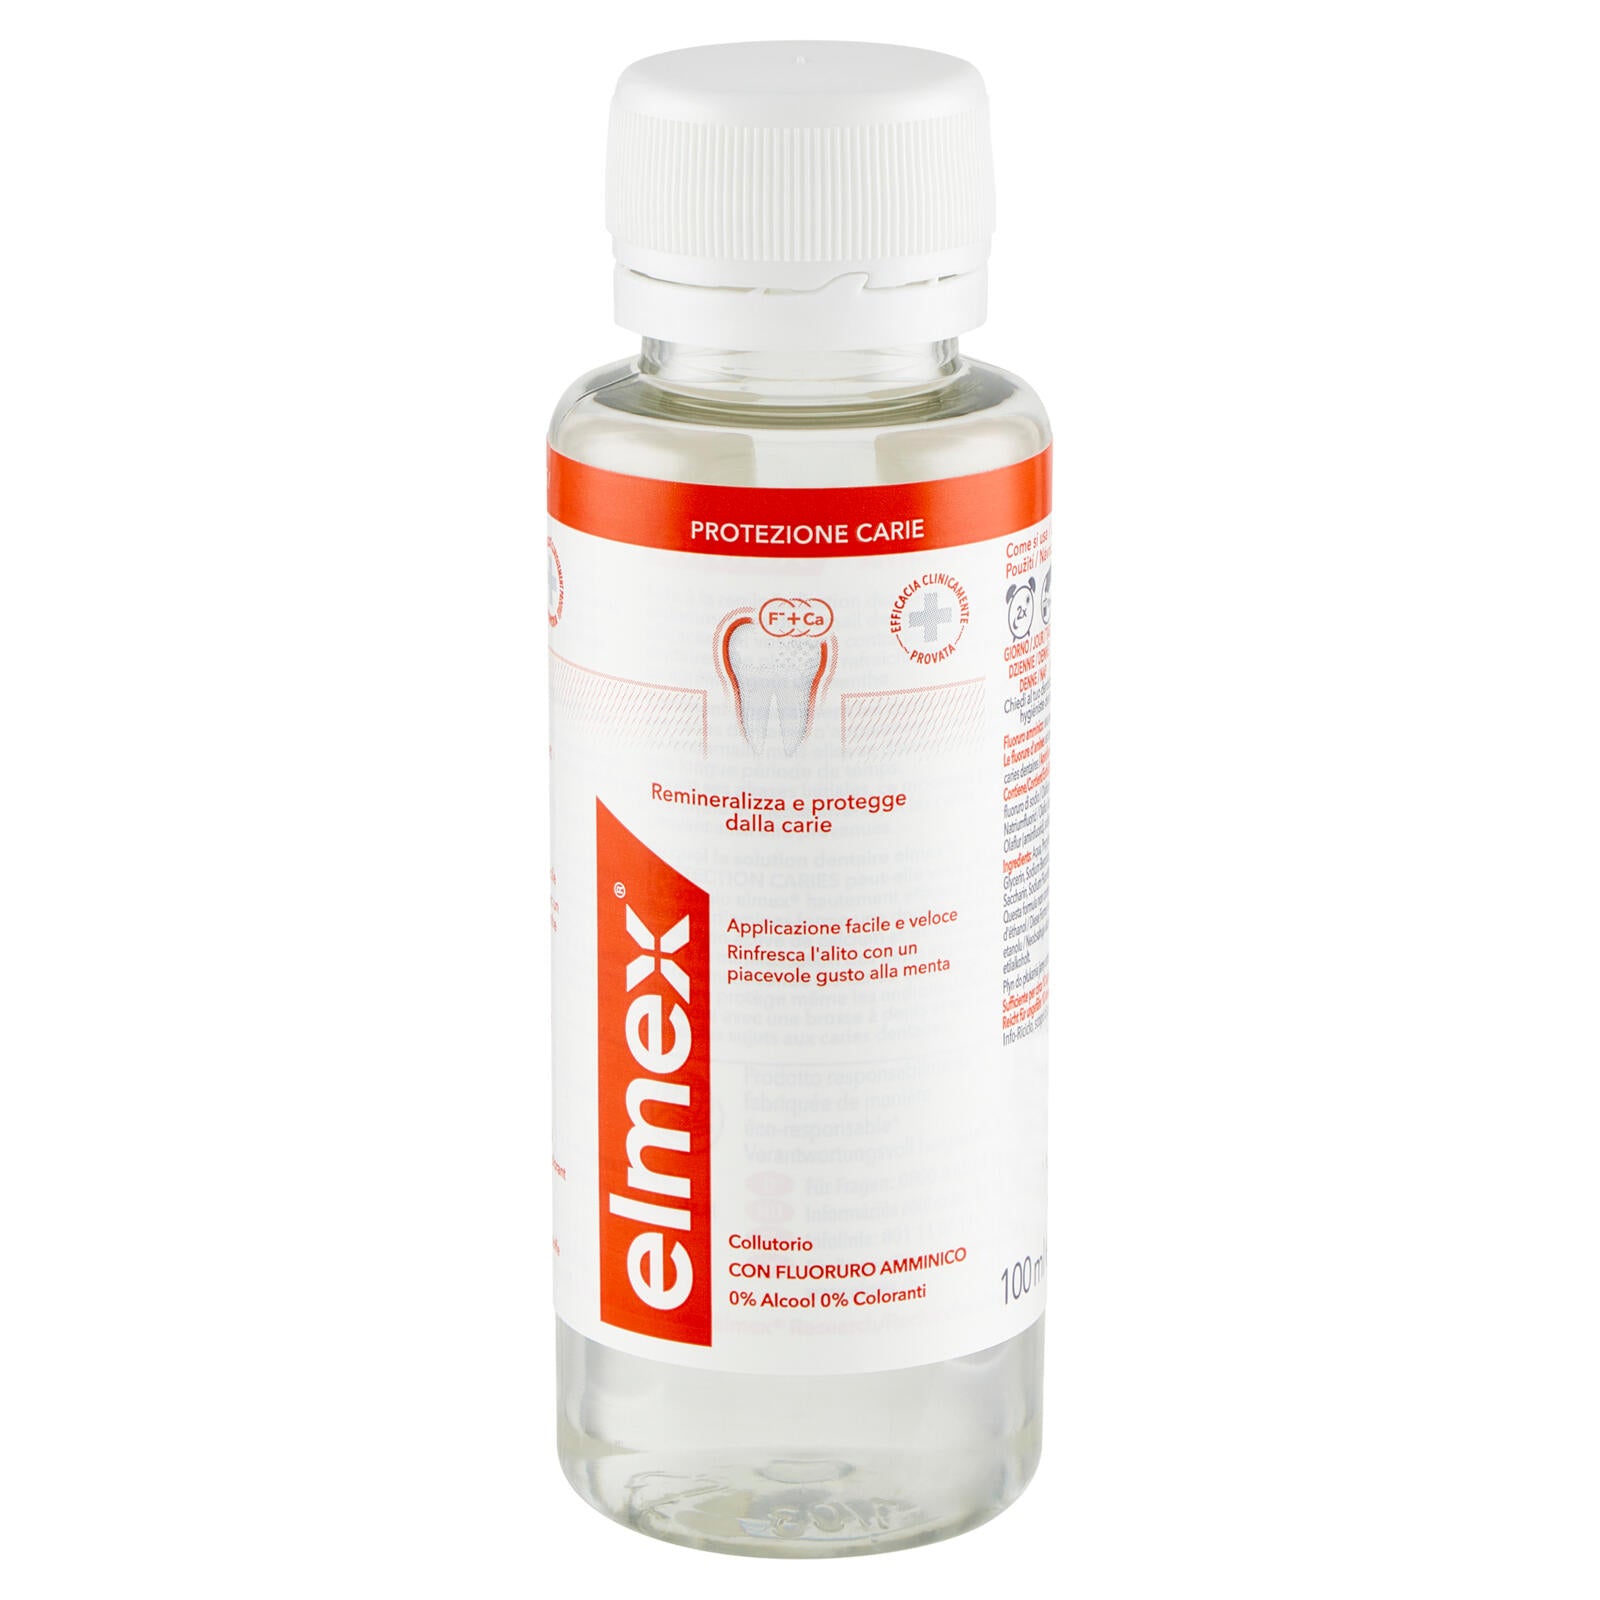 elmex collutorio Protezione Carie rinfresca l´alito 100 ml